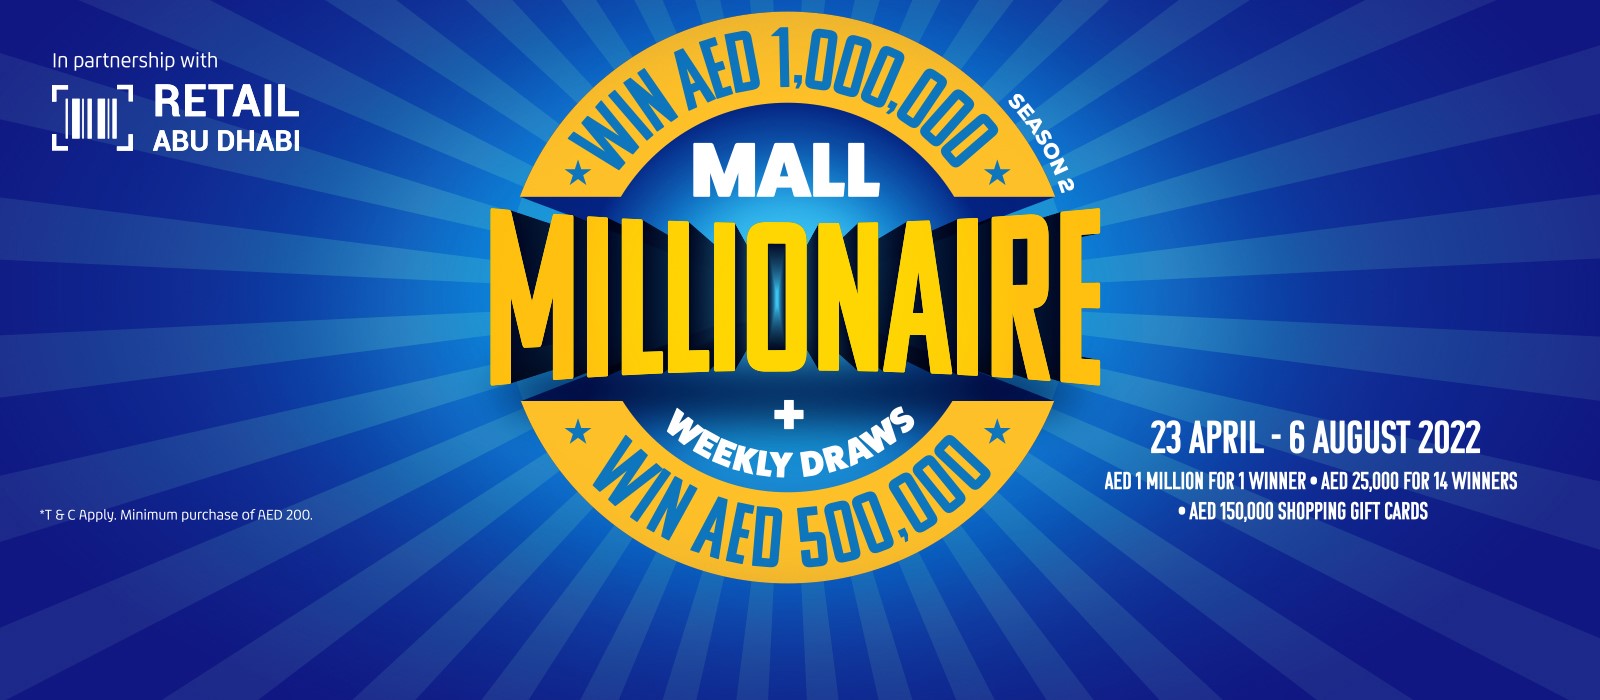 Mall Millionaire Season 2